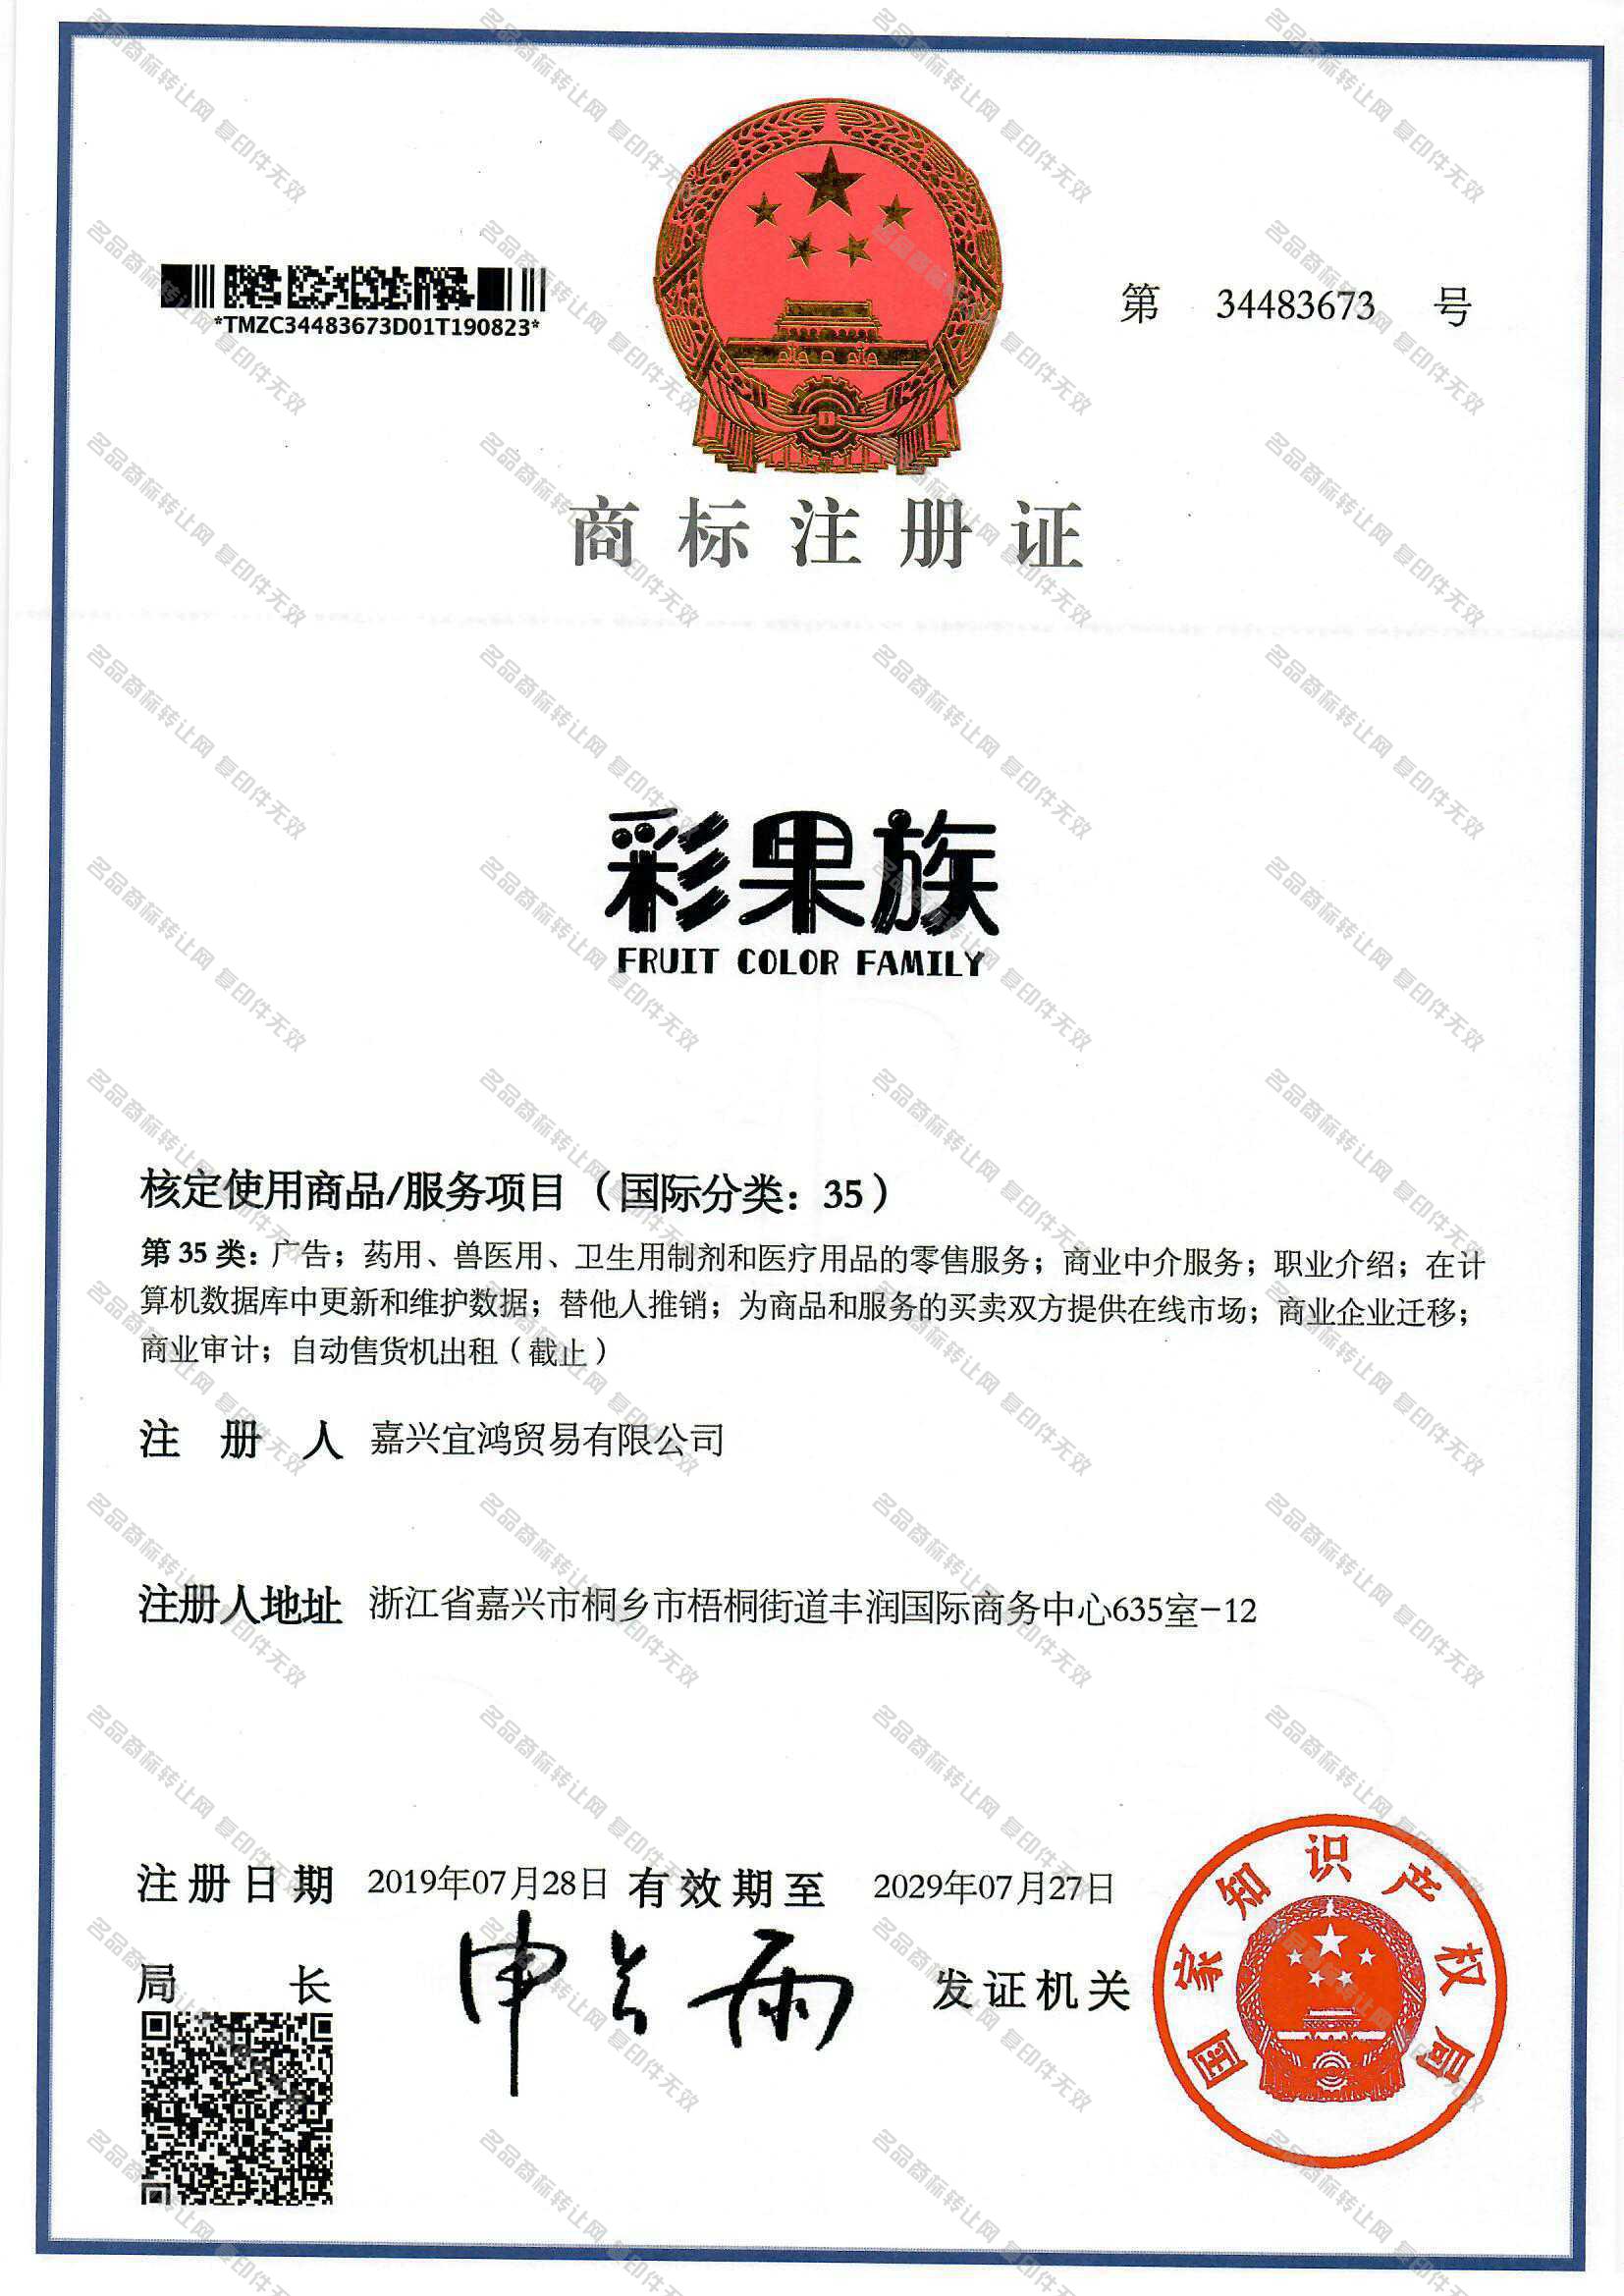 彩果族 FRUIT COLOR FAMILY注册证